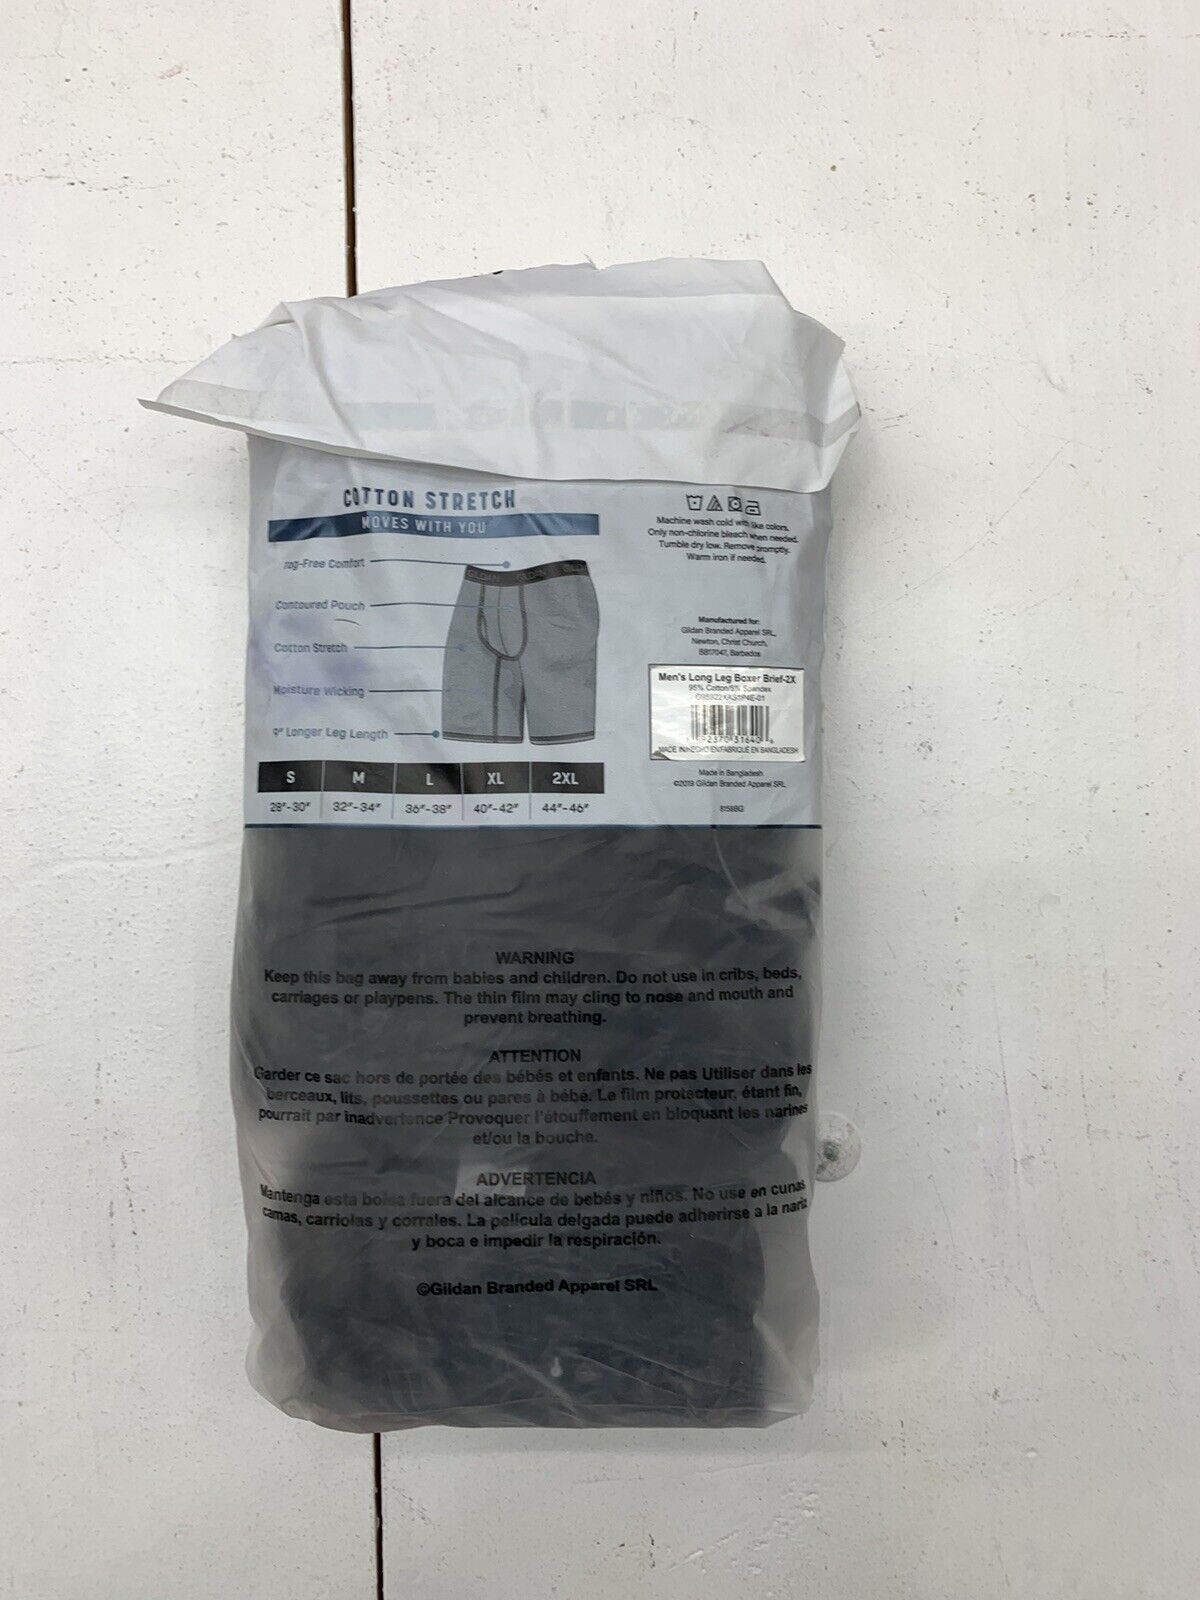 Gildan Mens Black Boxer Brief 4 Pack Underwear Size 2XL - beyond